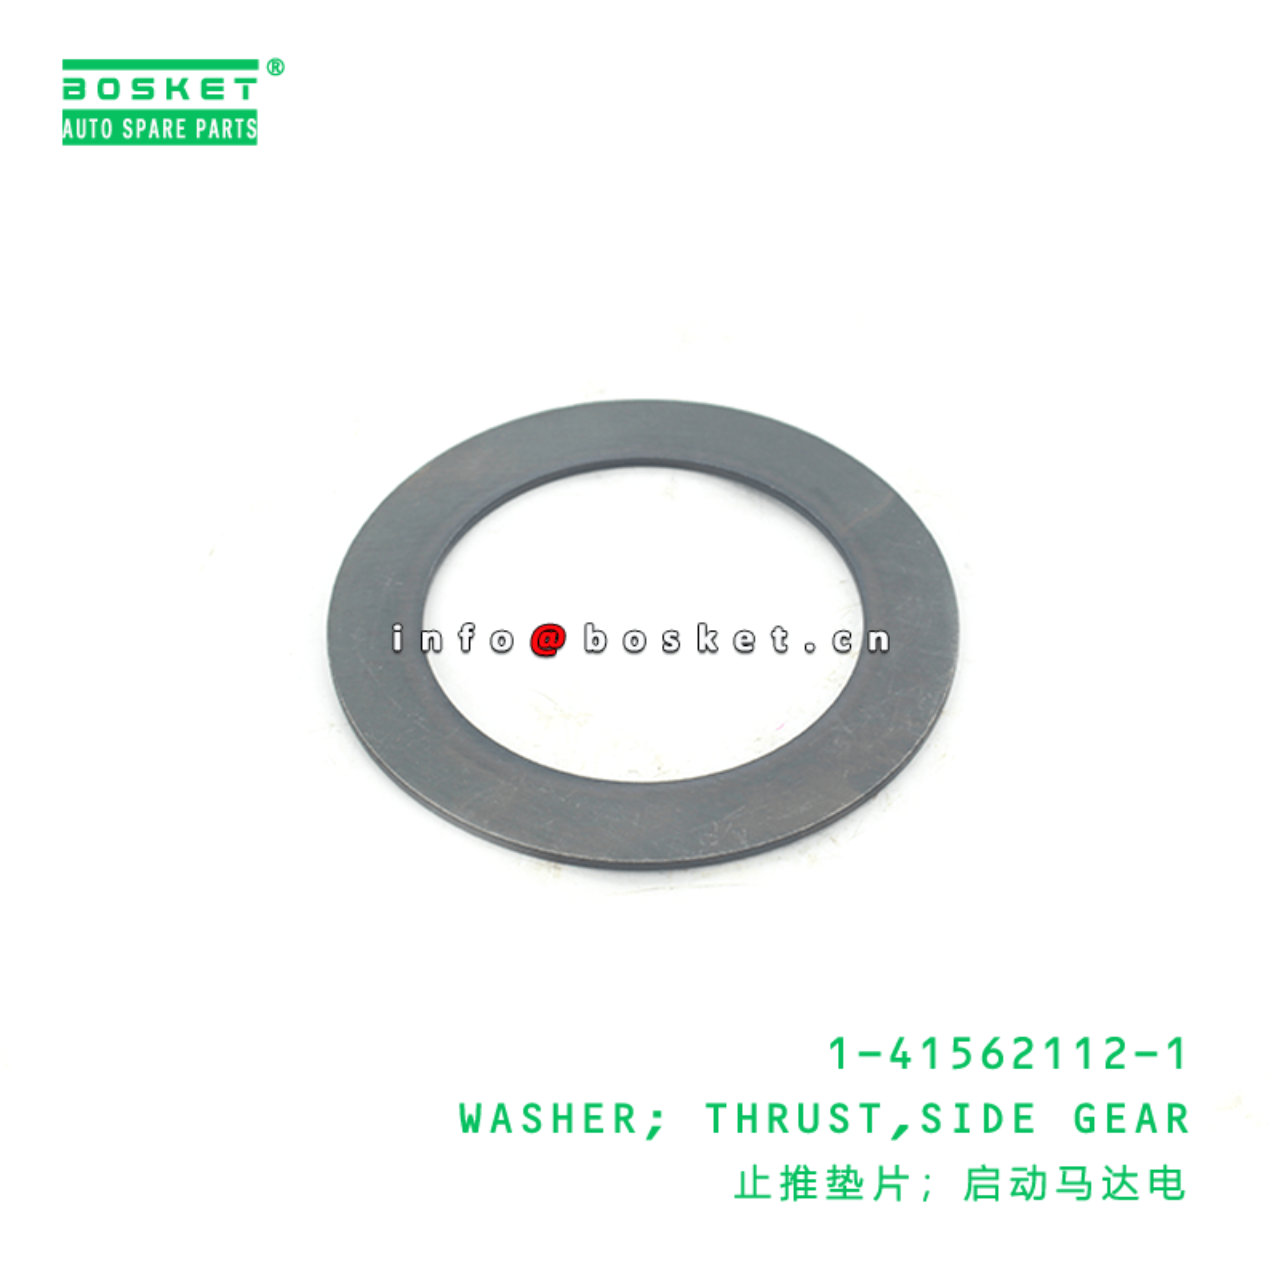 1-41562112-1 Side Gear Thrust Washer 1415621121 Suitable for ISUZU CXZ81